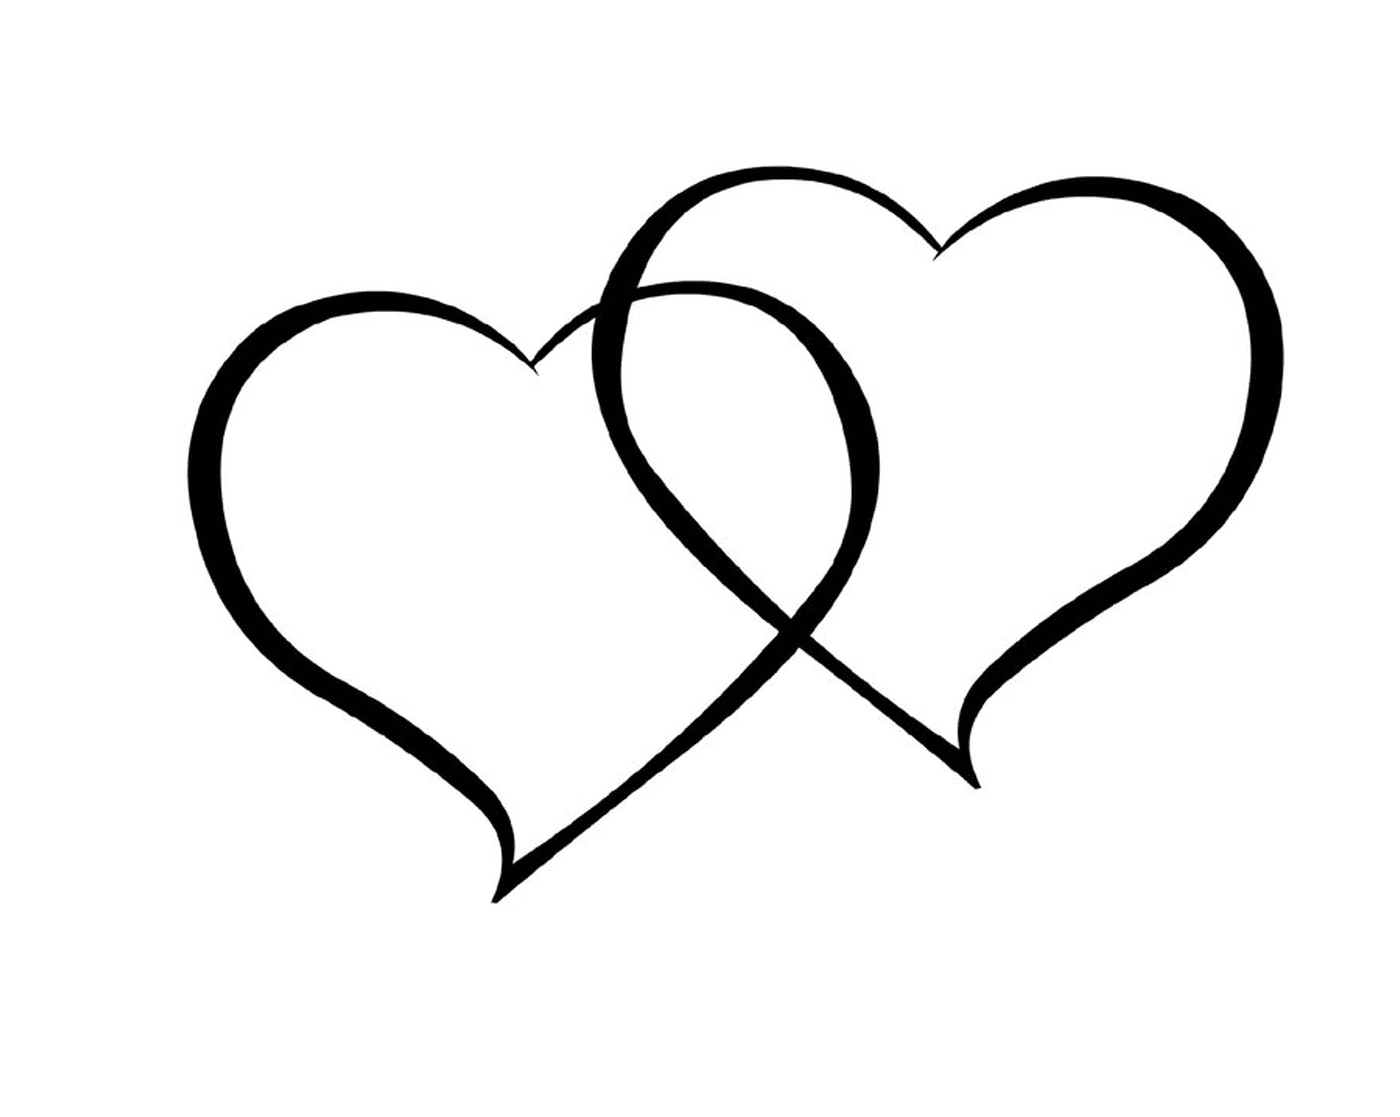   Deux cœurs dessinés à l'encre noire sur fond blanc 